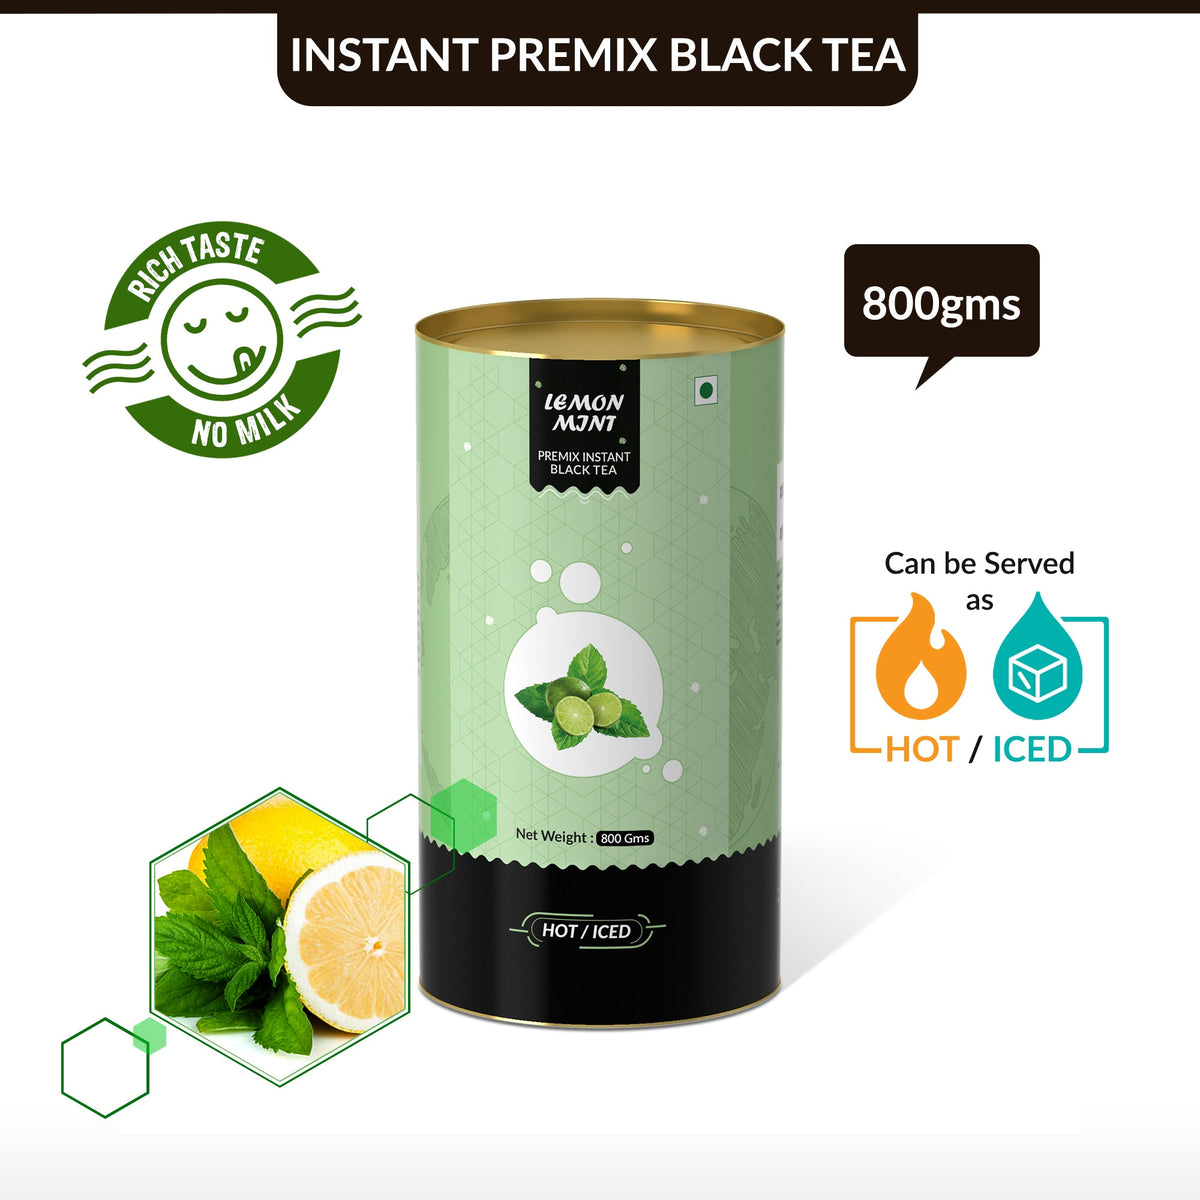 Lemon &mint Flavored Instant Black Tea